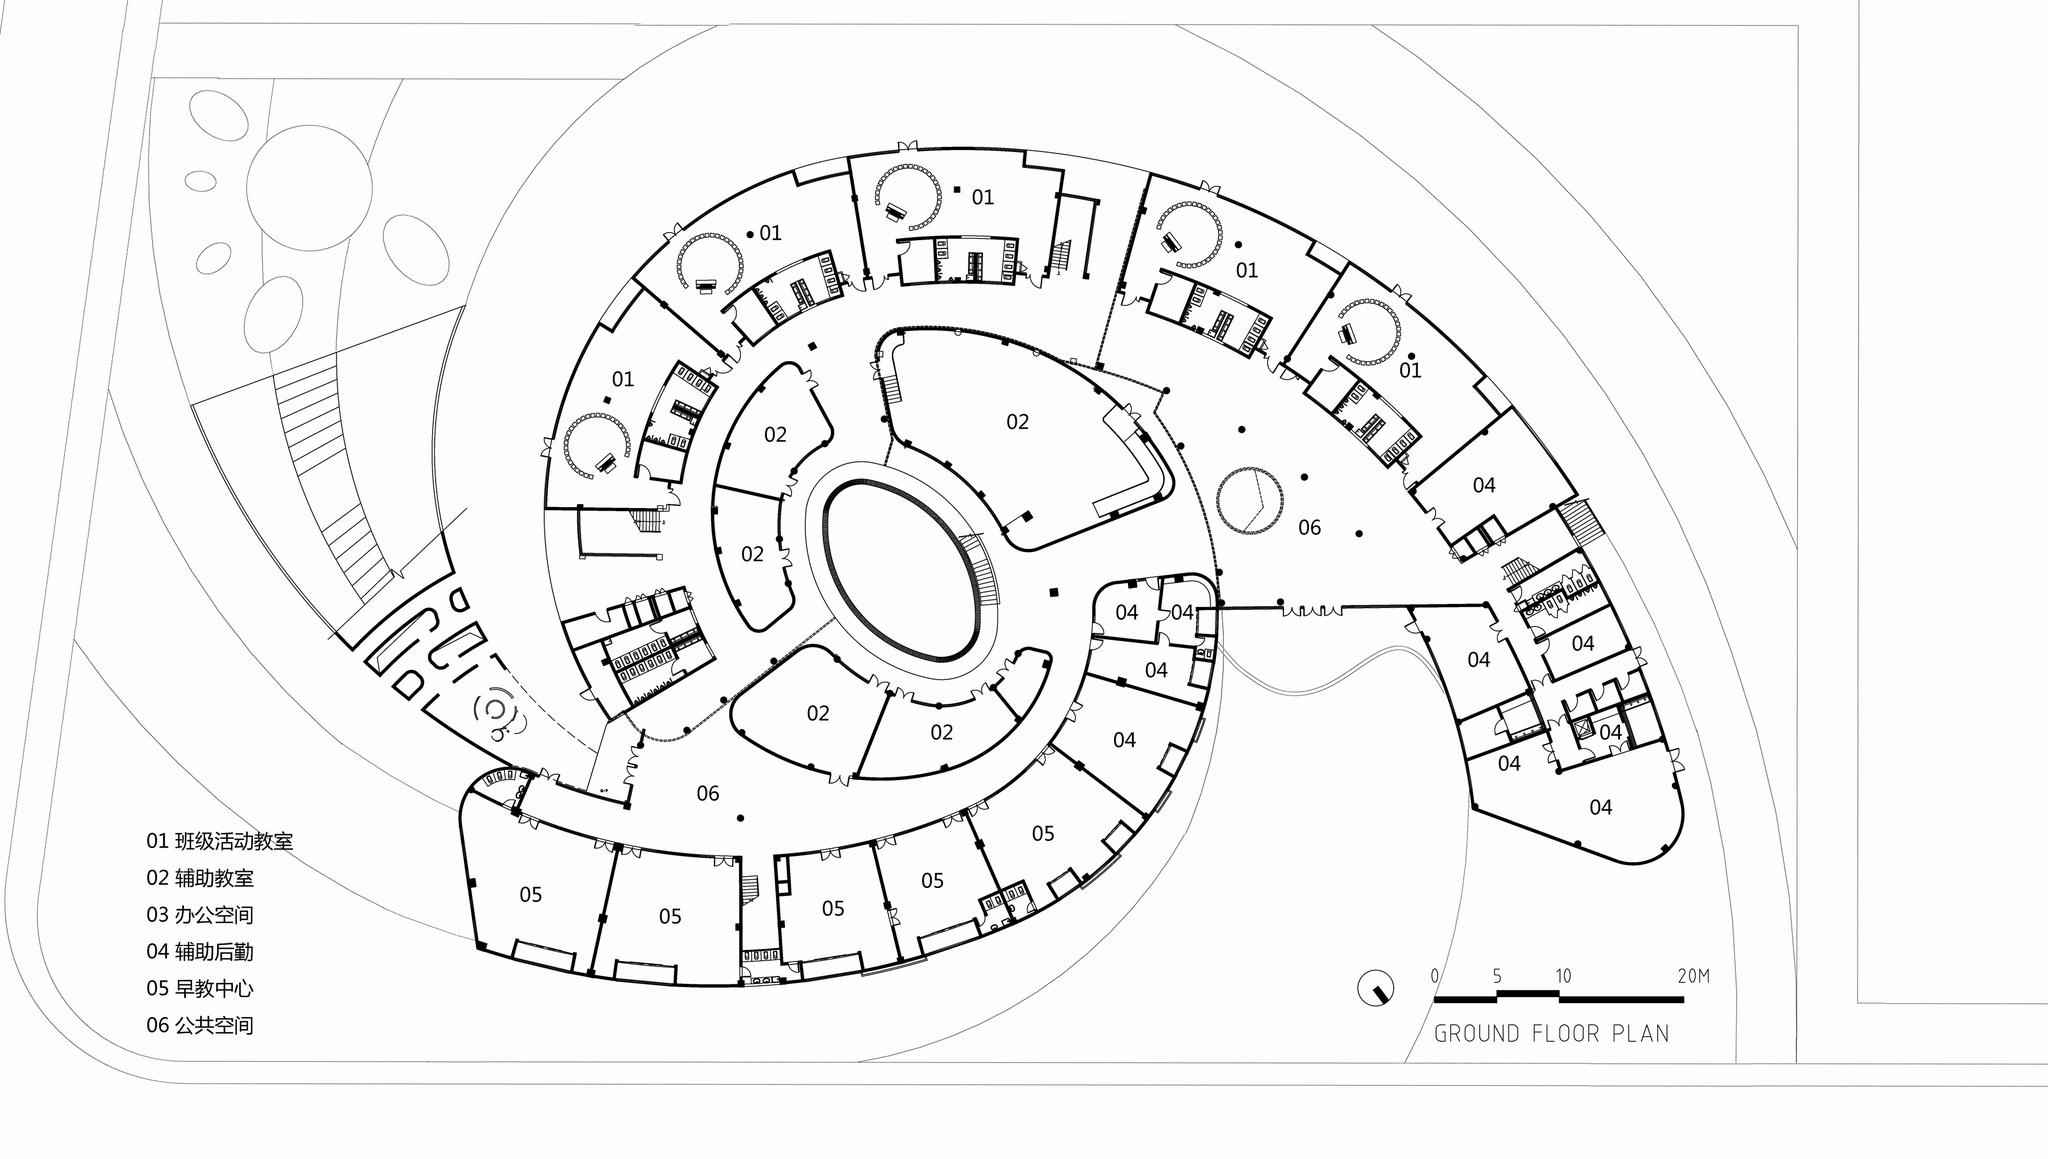 一只静躺于海边的"海螺城堡":大孚双语幼儿园 / 上海思序建筑规划设计